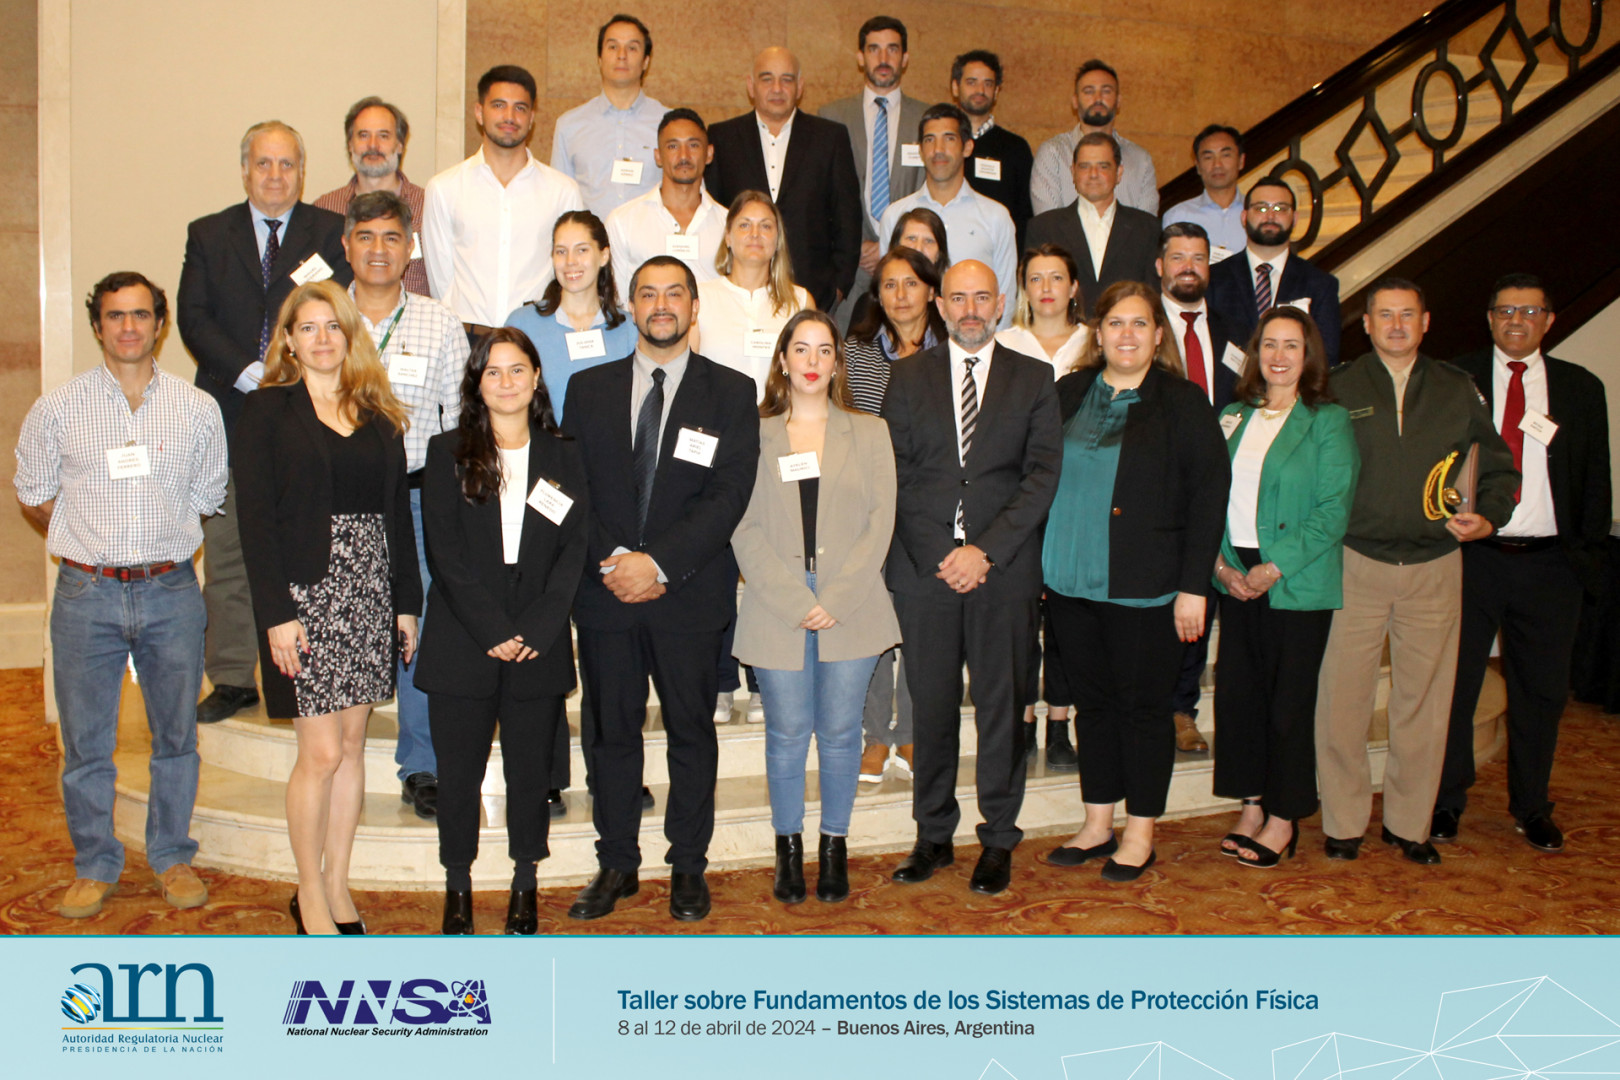 El Taller contó con la participación de 23 profesionales argentinos del sector nuclear y fuerzas de seguridad